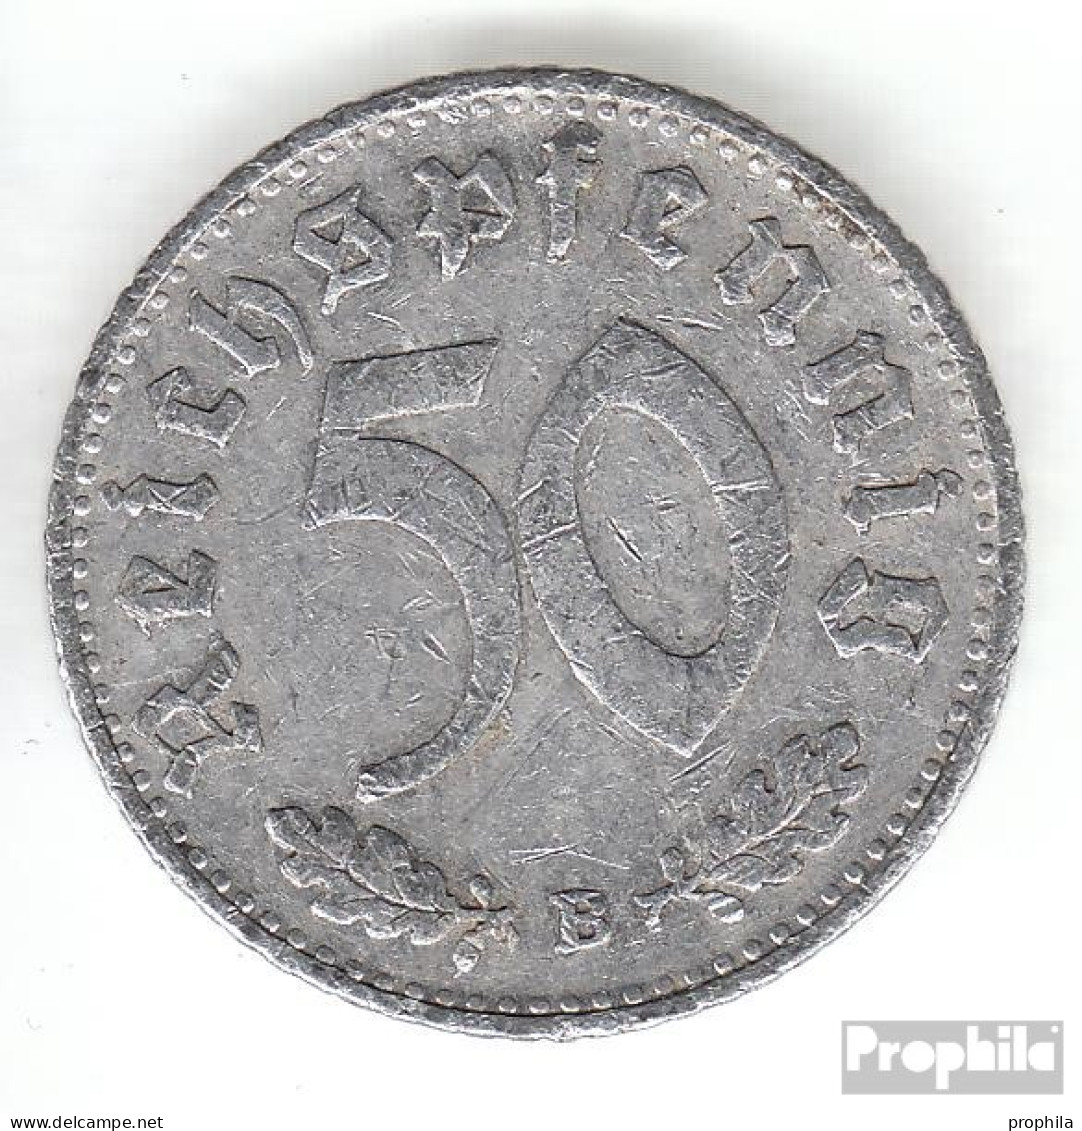 Deutsches Reich Jägernr: 372 1939 F Sehr Schön Aluminium Sehr Schön 1939 50 Reichspfennig Reichsadler - 50 Reichspfennig